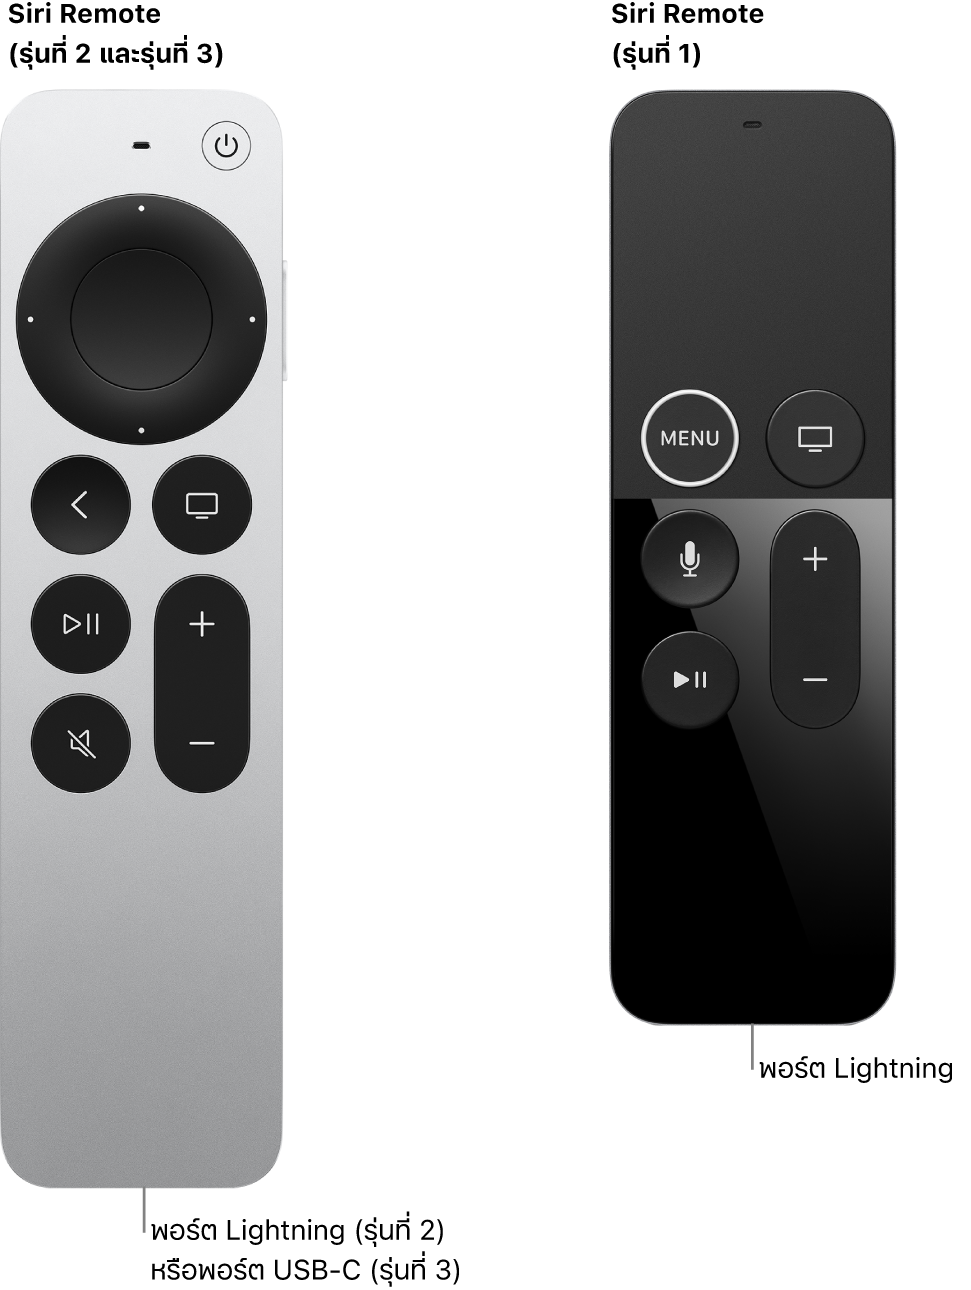 ภาพของ Siri Remote (รุ่นที่ 2 และรุ่นที่ 3) และ Siri Remote (รุ่นที่ 1) ที่แสดงพอร์ตช่องต่อ